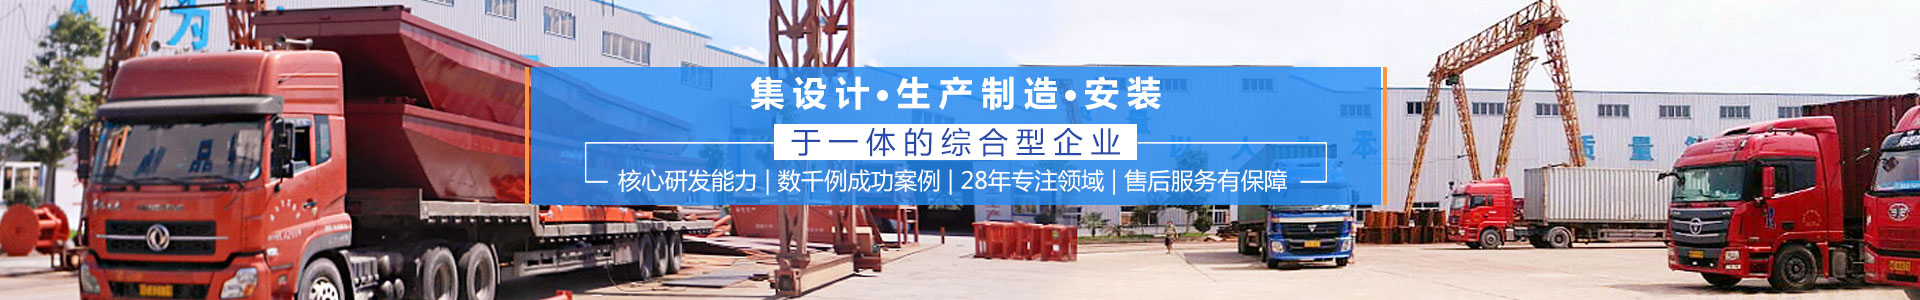 浏阳汇鑫工贸有限公司——淘金设备厂家|沙金设备定制|淘金船设备|钻石开采设备